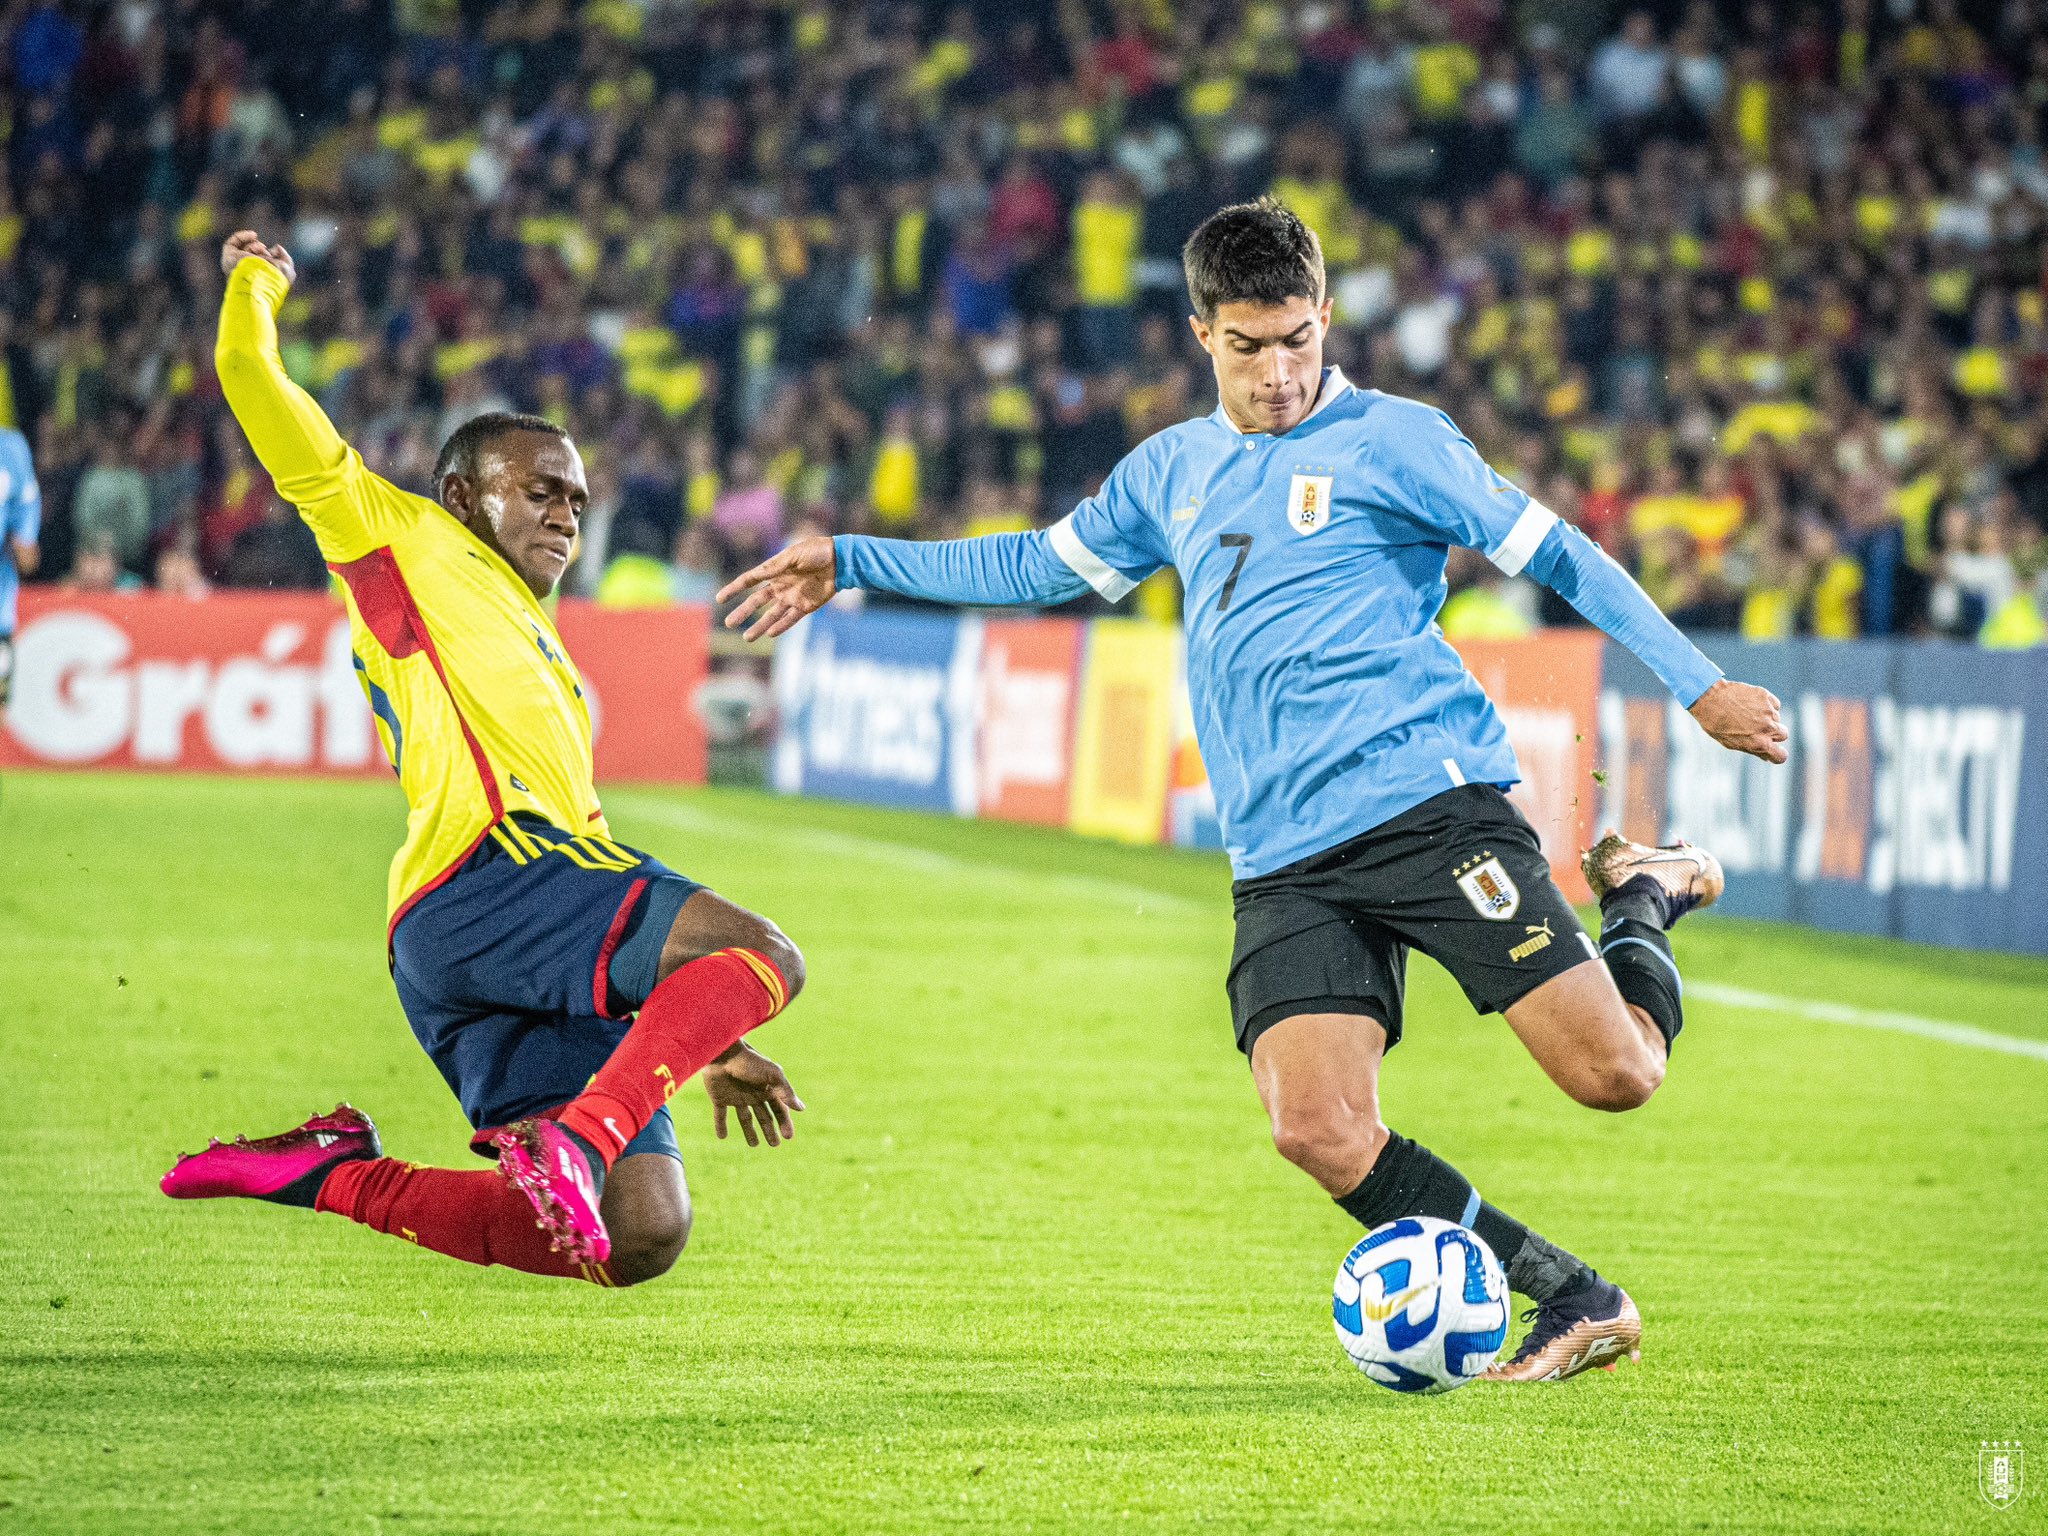 Acción de juego entre Colombia y Uruguay. Twitter.